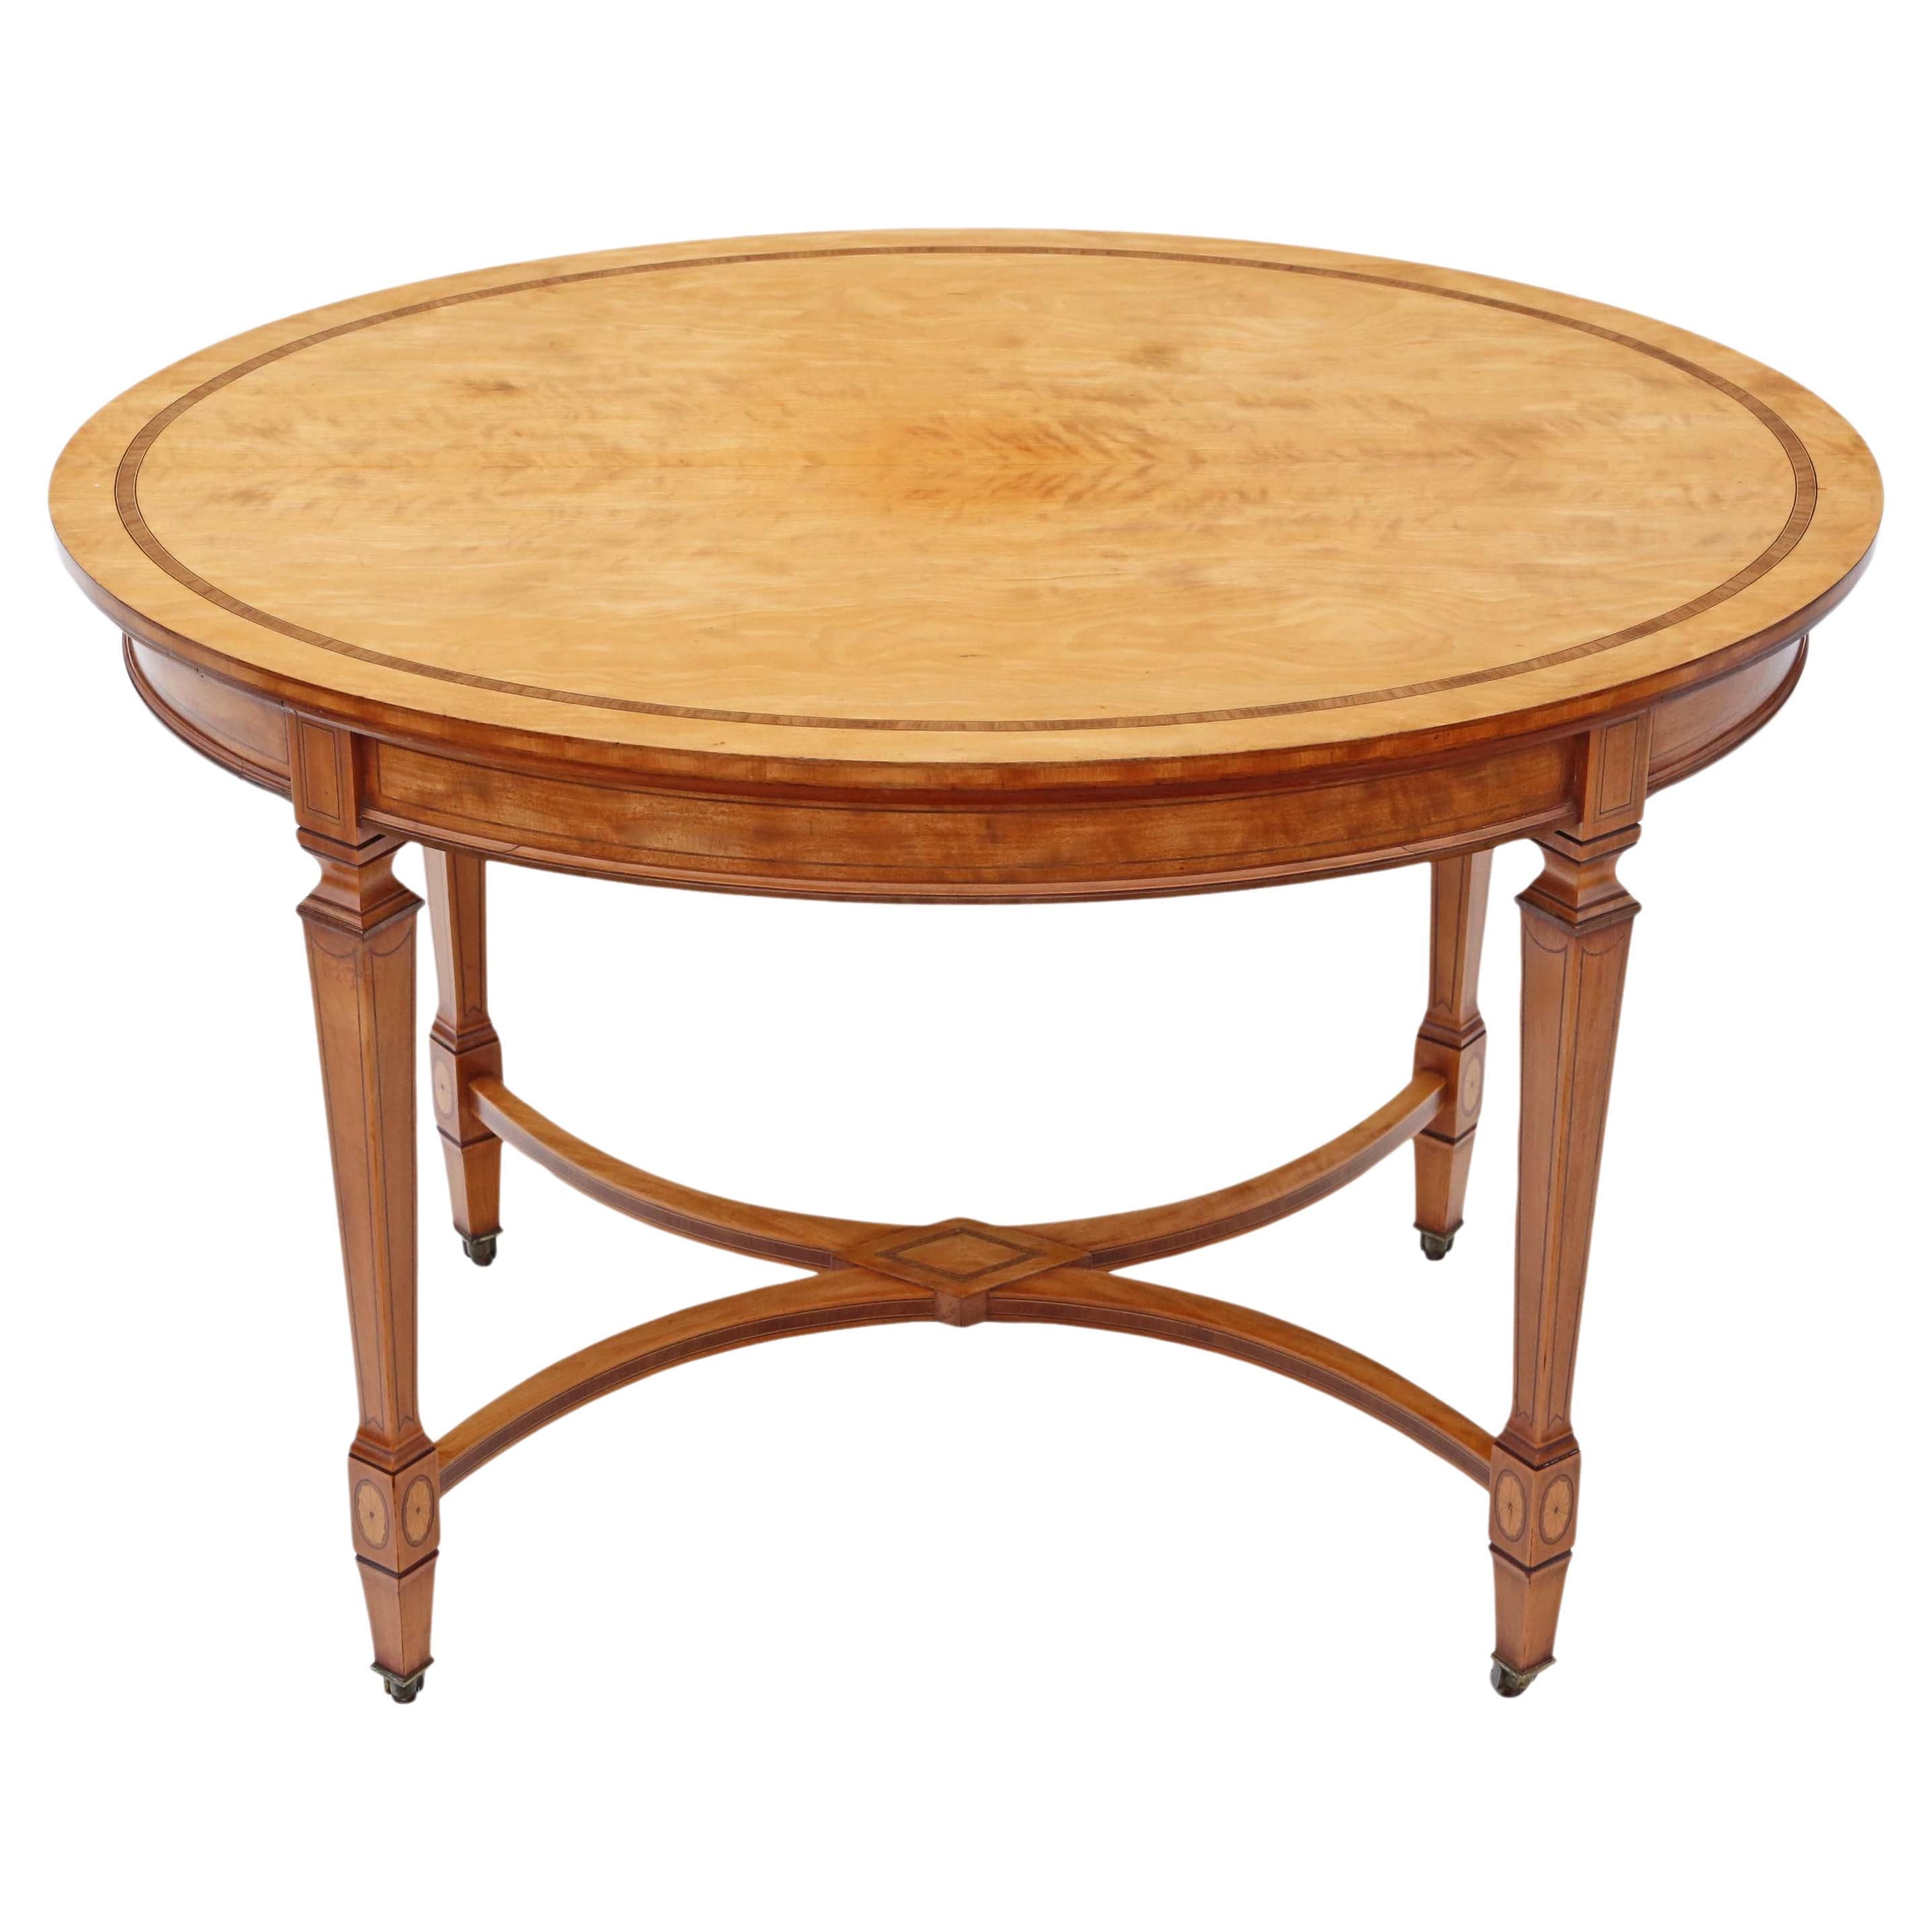 Hochwertiger viktorianischer Tisch mit Intarsien aus Satinholz von ca. 1880-1900, antik